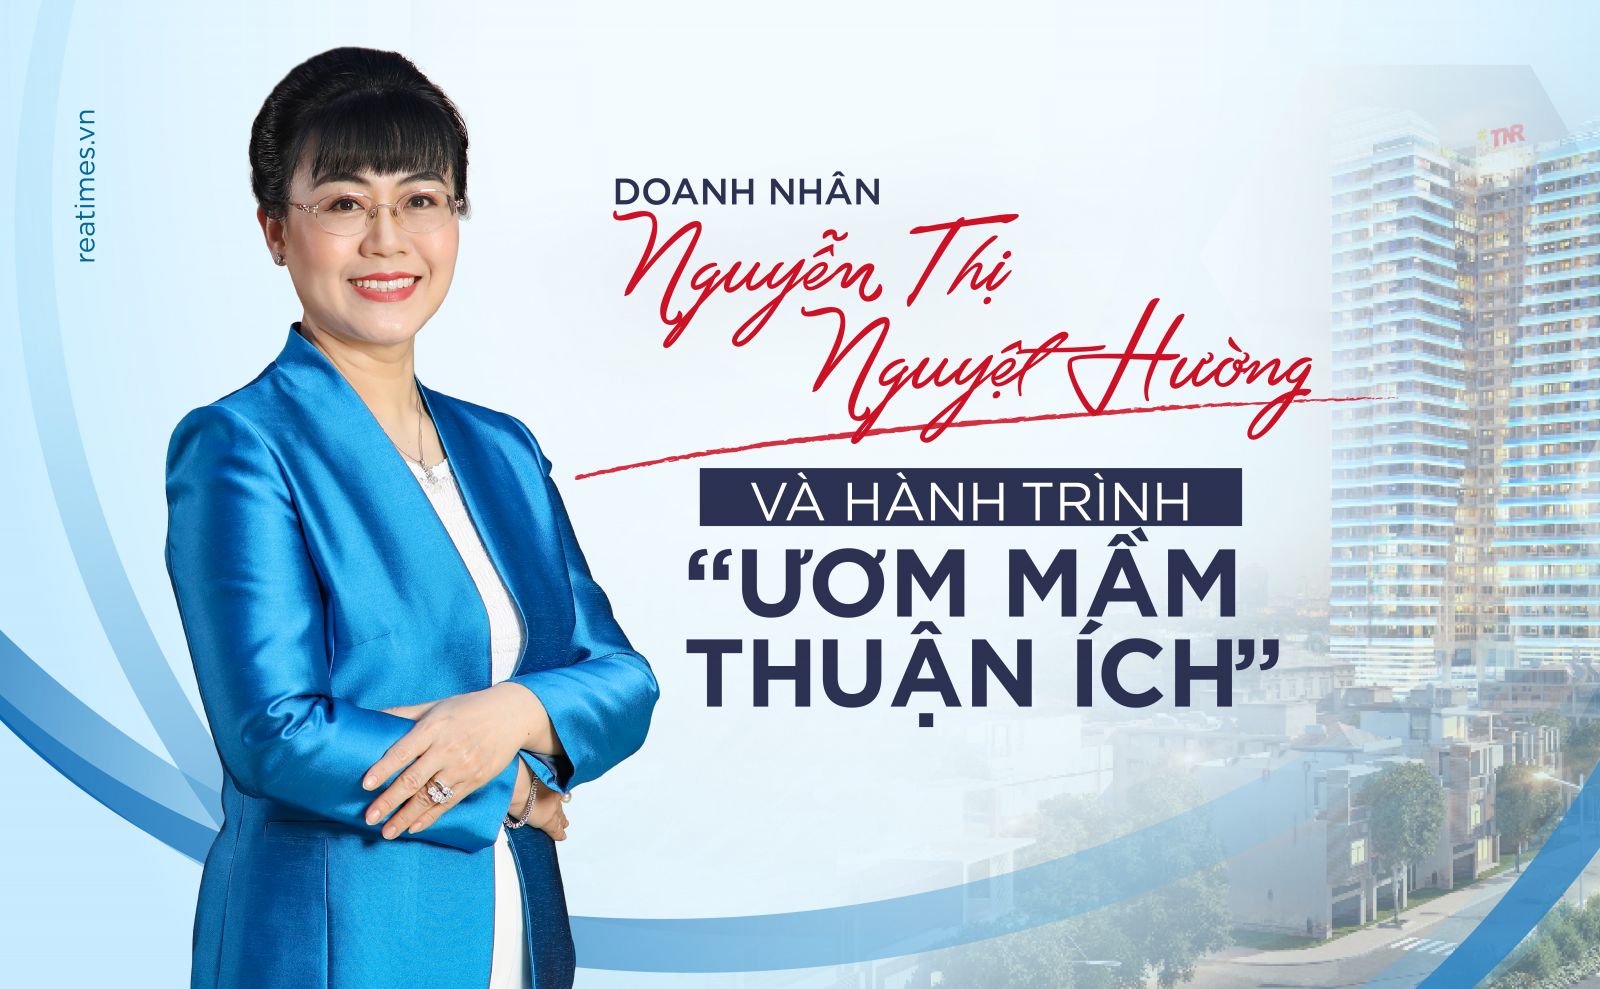 Doanh nhân Nguyễn Thị Nguyệt Hường và hành trình “ươm mầm thuận ích”